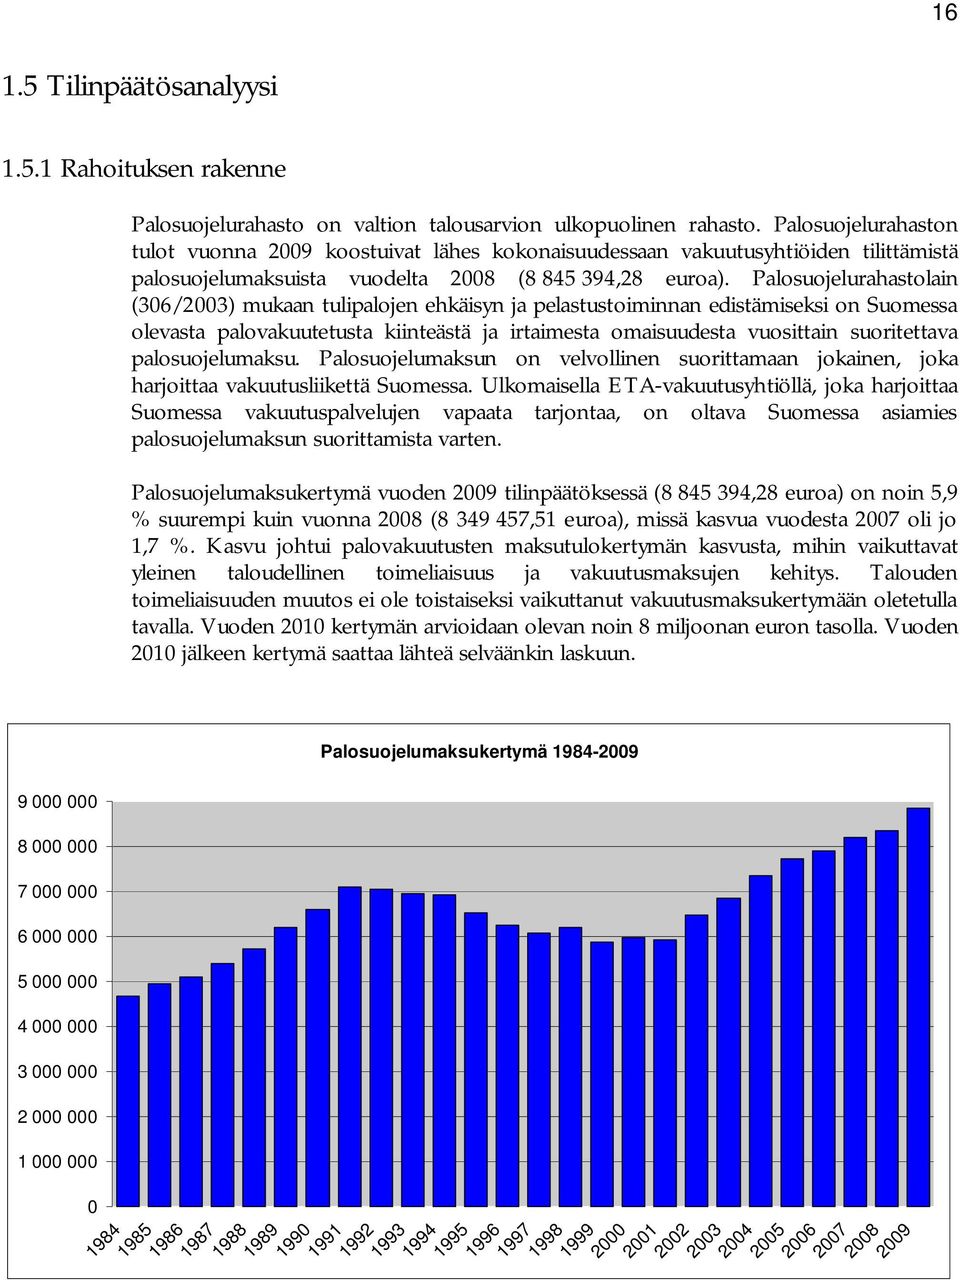 Palosuojelurahastolain (306/2003) mukaan tulipalojen ehkäisyn ja pelastustoiminnan edistämiseksi on Suomessa olevasta palovakuutetusta kiinteästä ja irtaimesta omaisuudesta vuosittain suoritettava